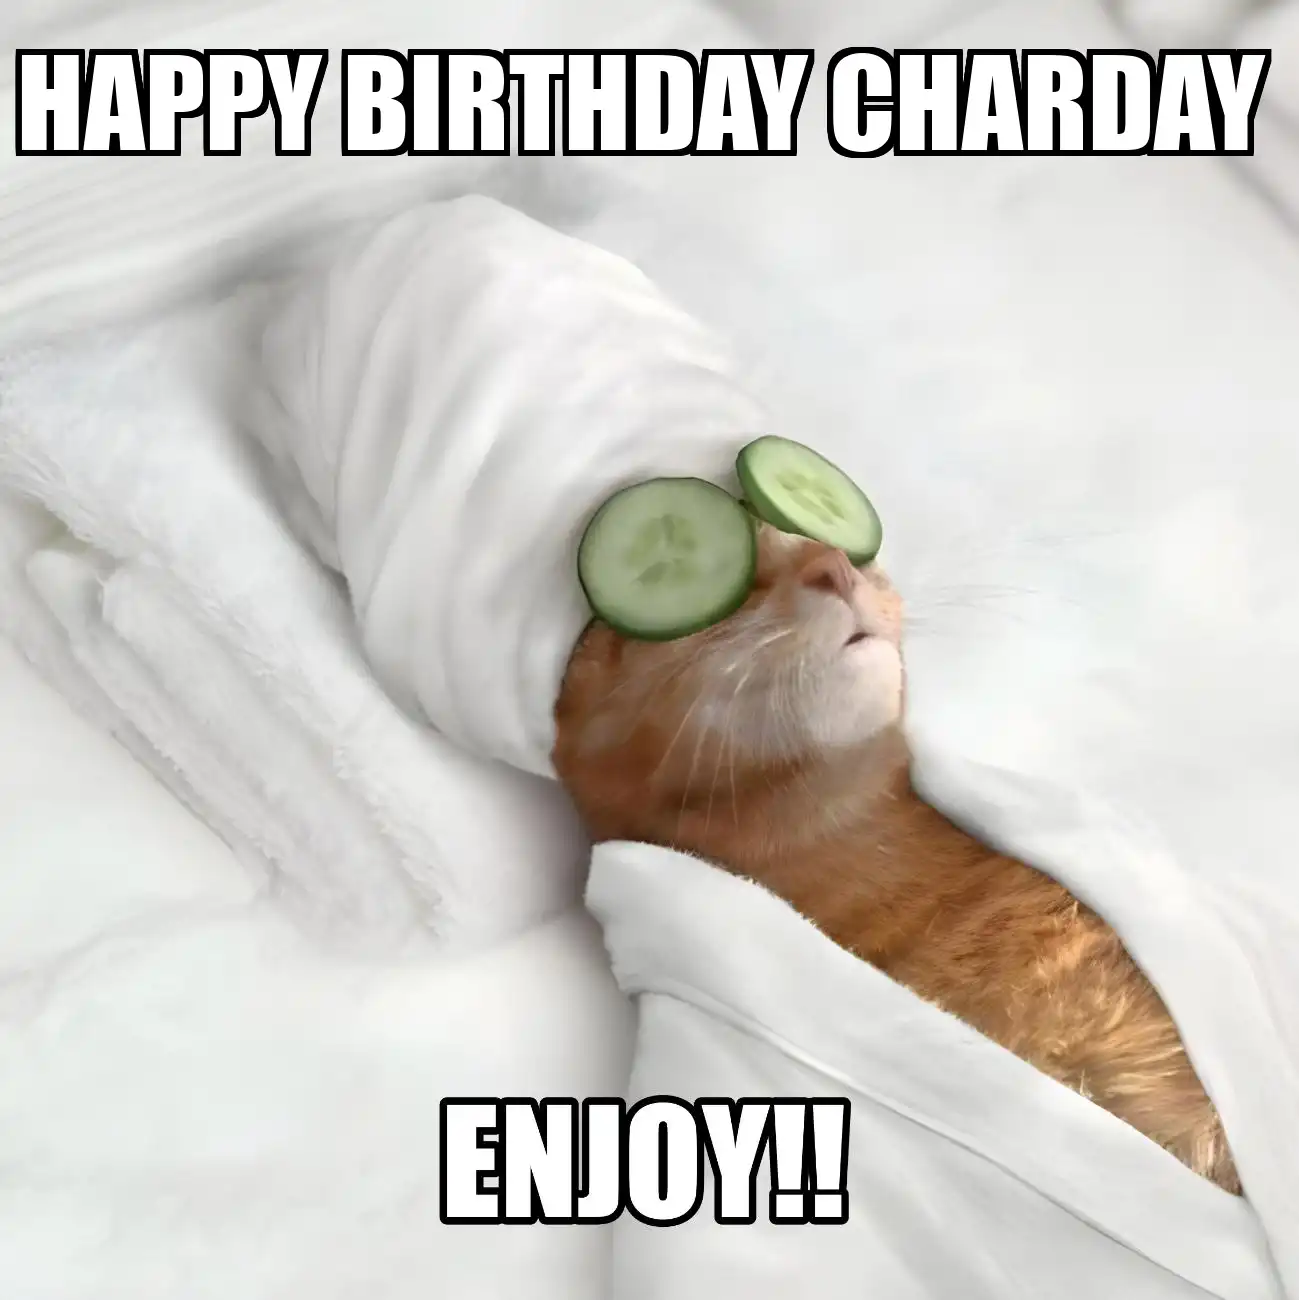 Happy Birthday Charday Enjoy Cat Meme